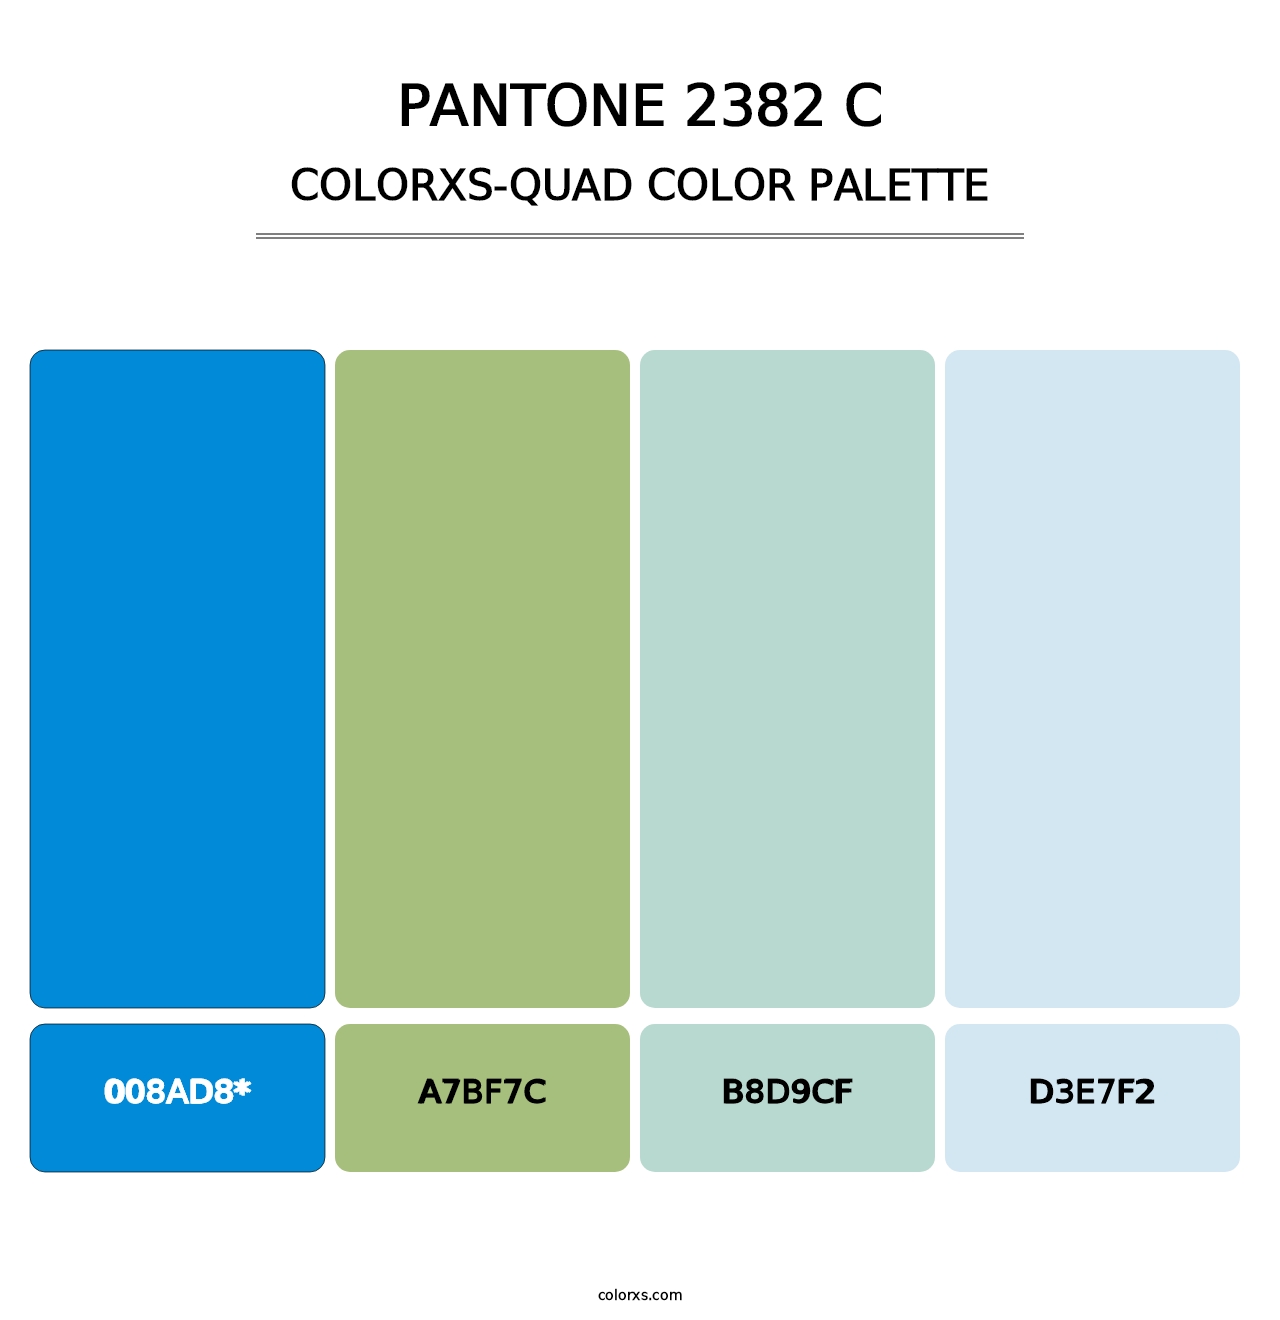 PANTONE 2382 C - Colorxs Quad Palette